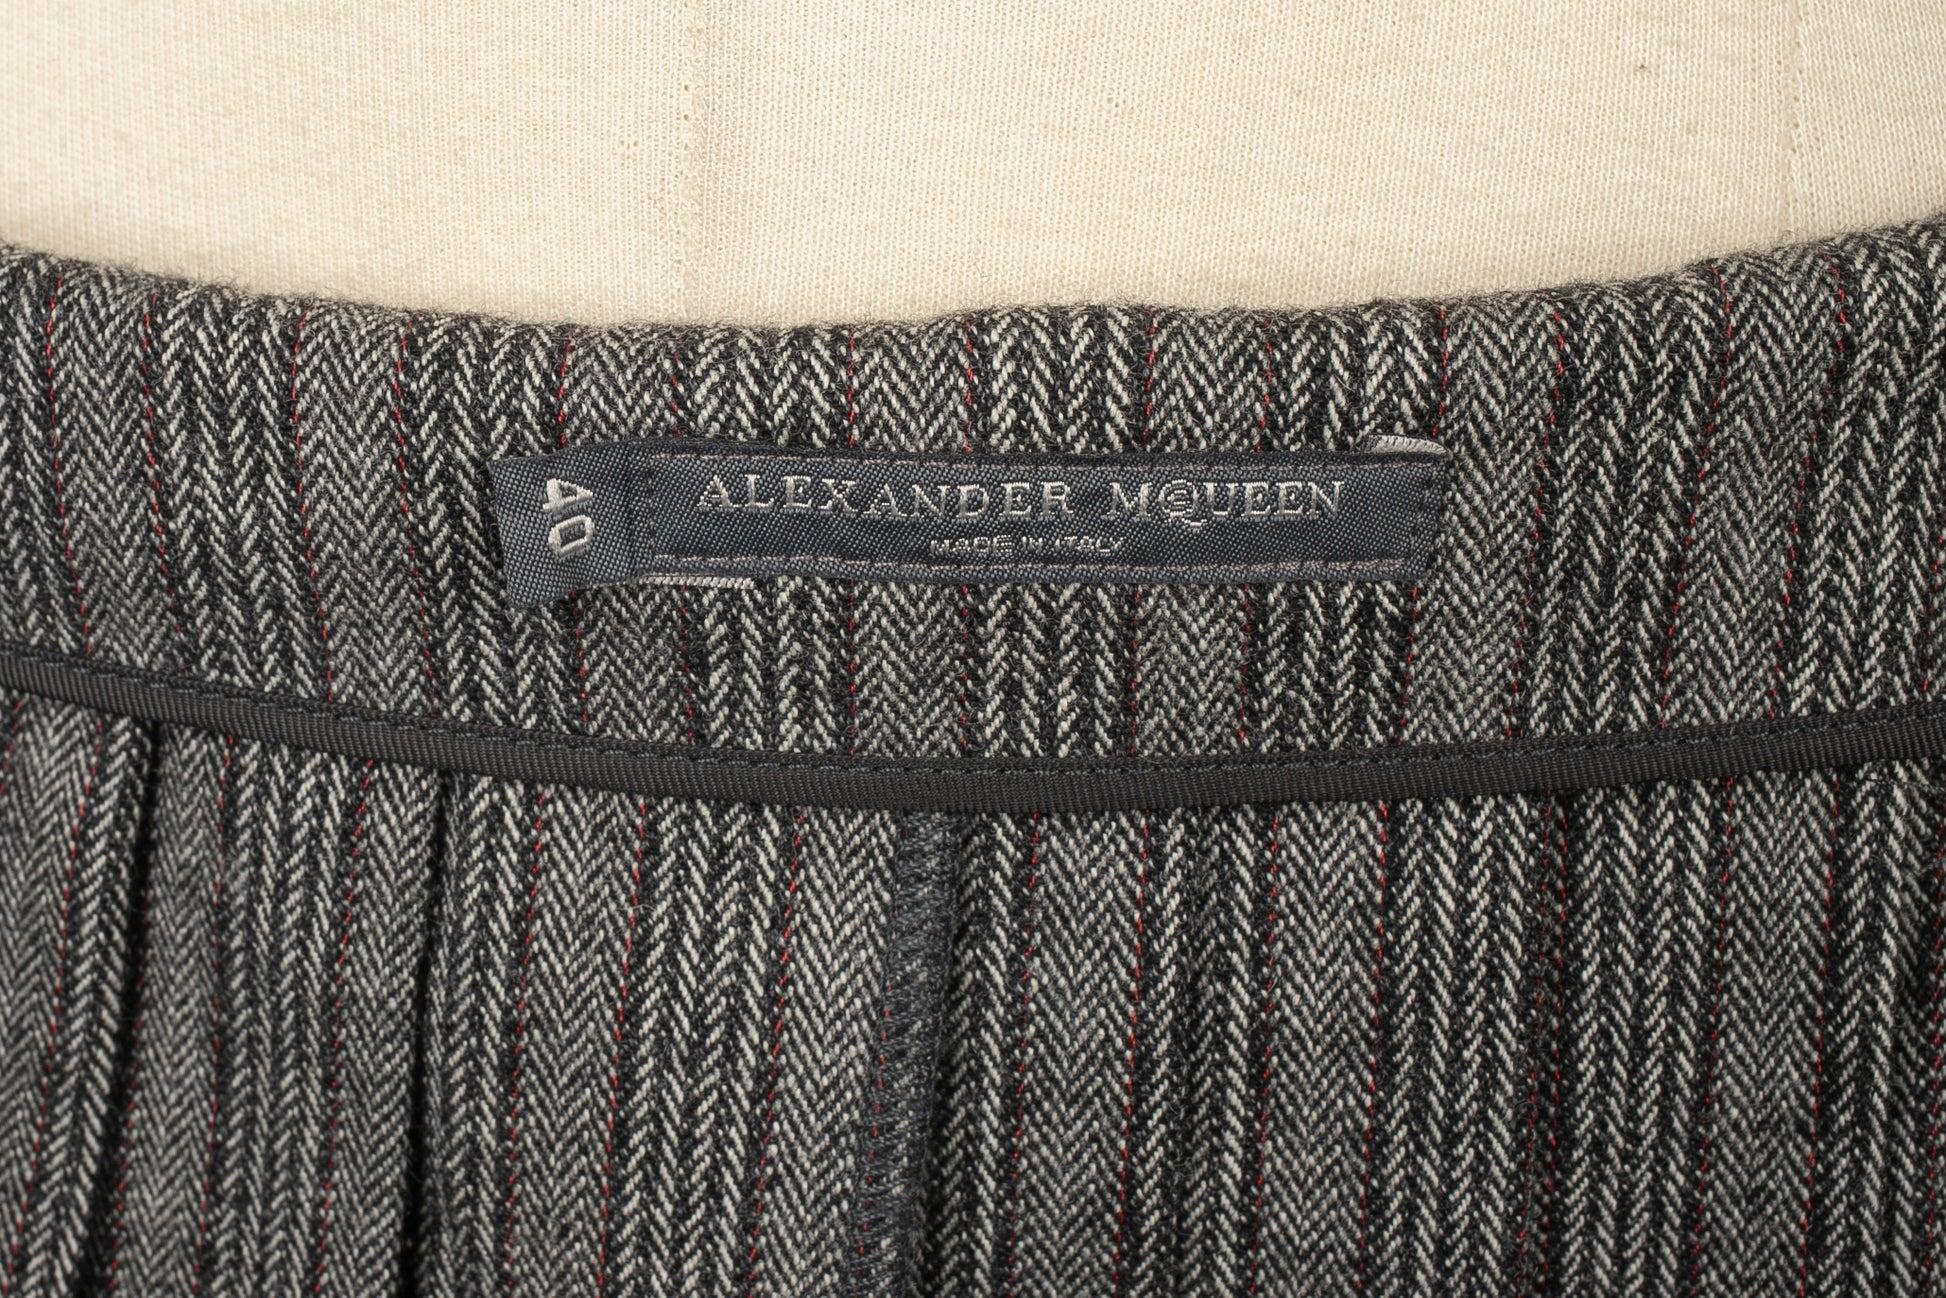 Alexander Mcqueen Blended Wool Skirt, 2006 For Sale 4